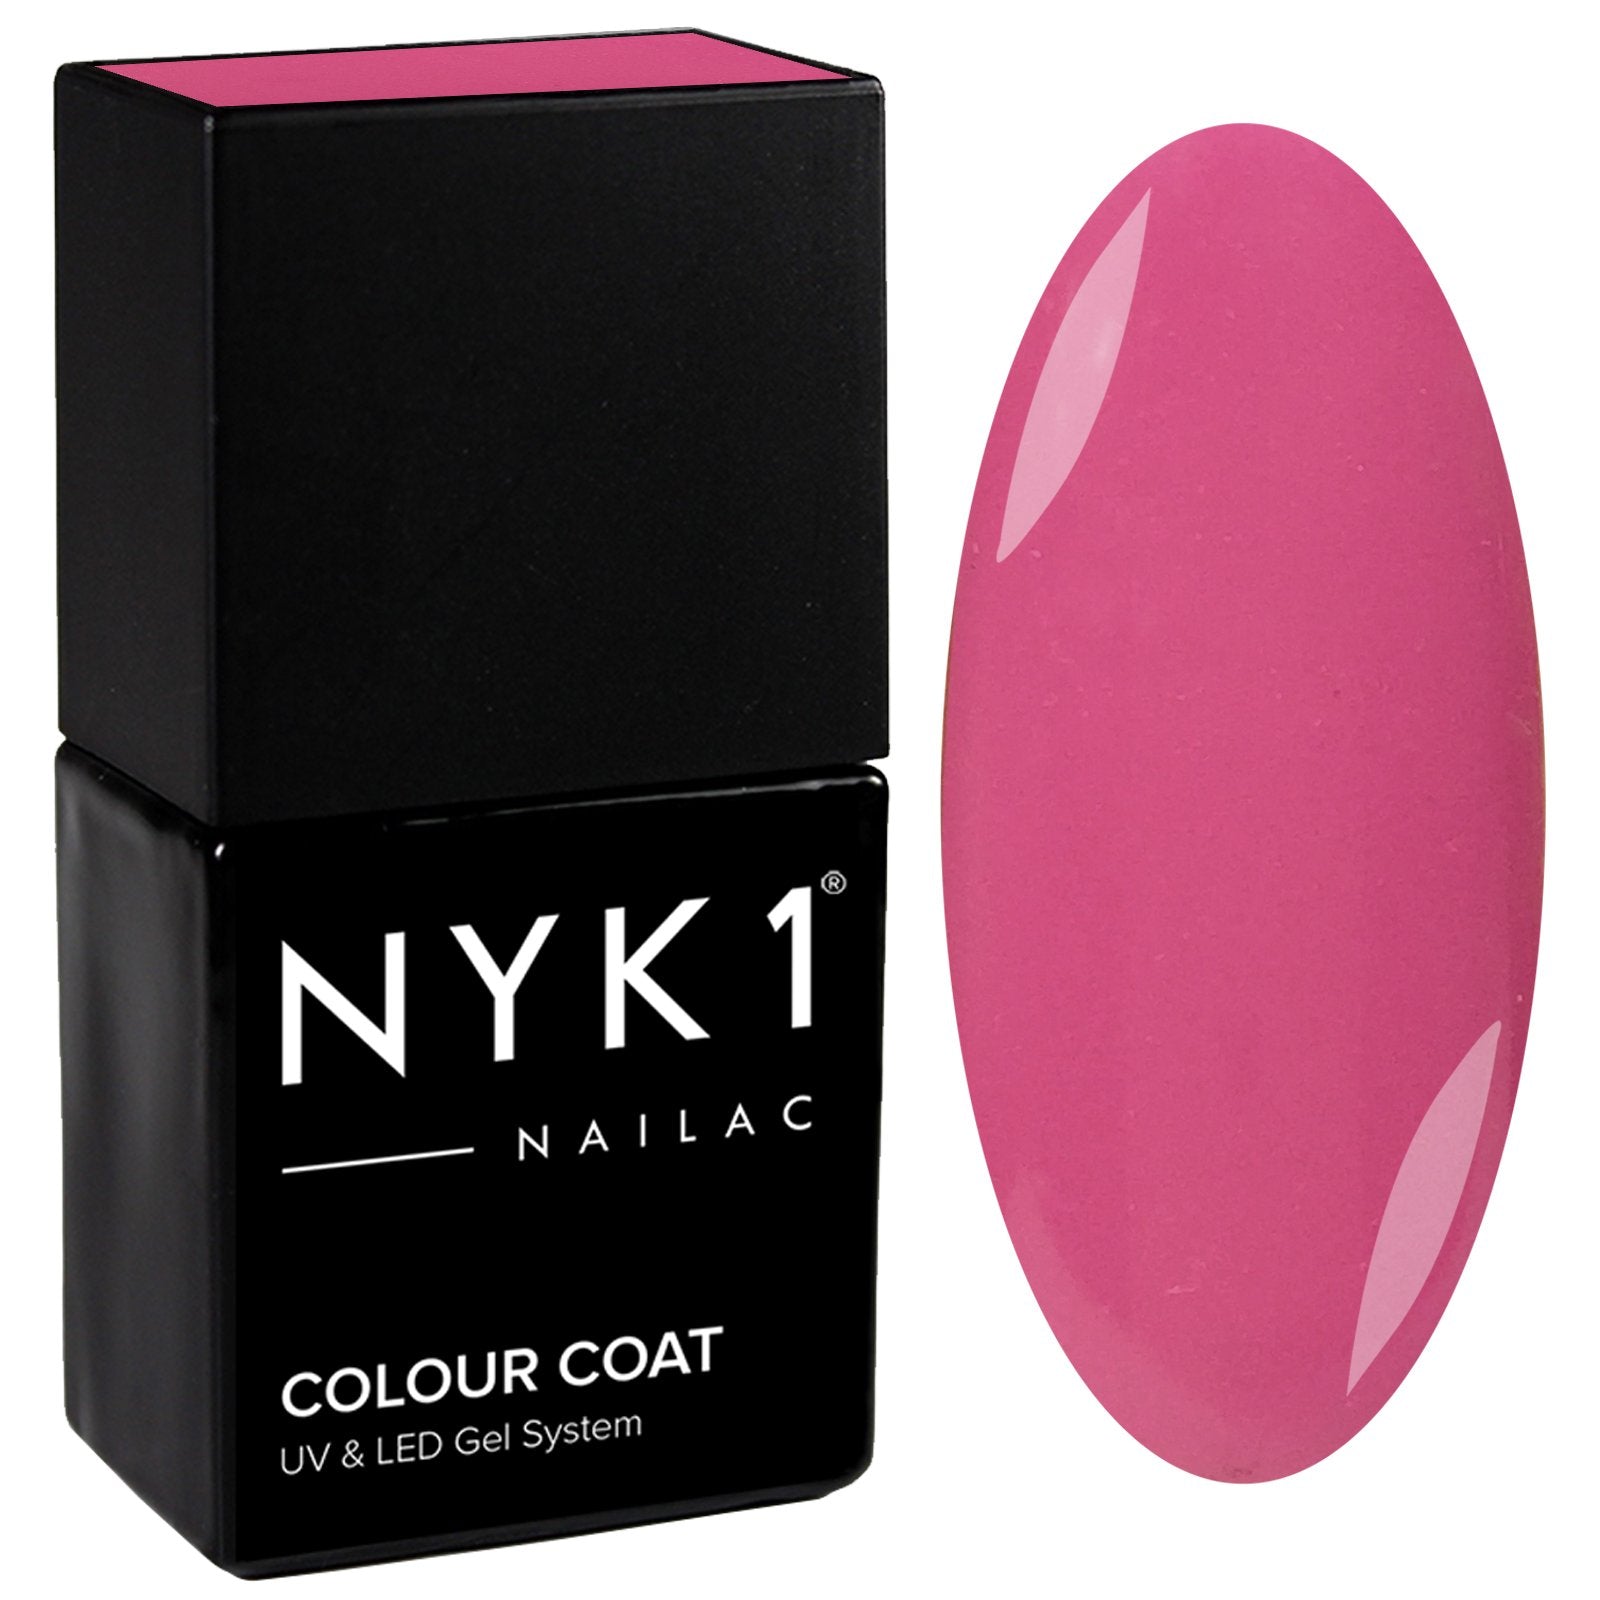 NYK1 Nailac Hot Pink Gel Nail Polish